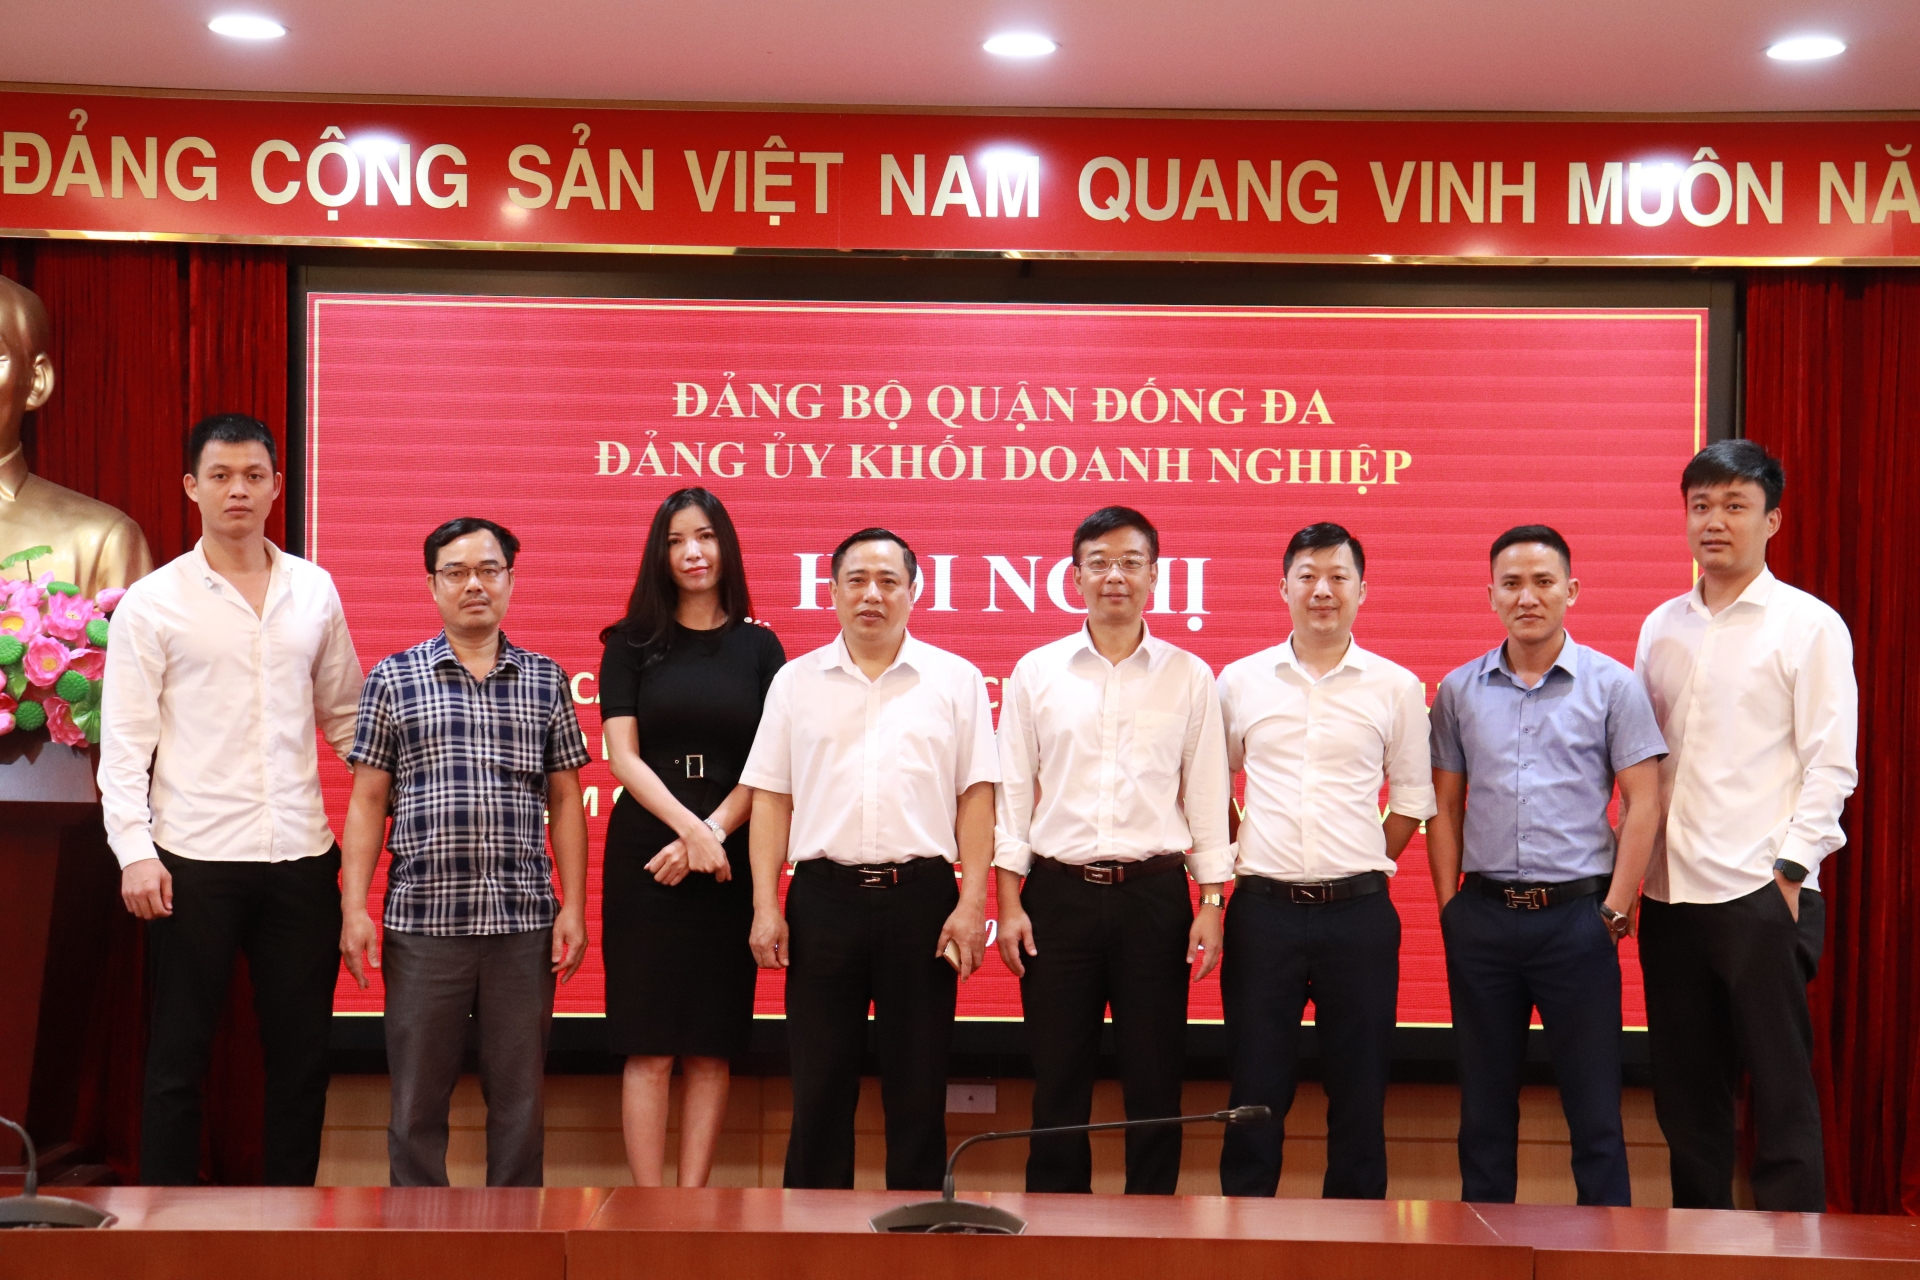 Đảng ủy Khối doanh nghiệp quận Đống Đa: Gặp mặt các cơ quan báo chí, truyền hình nhân kỷ niệm 98 năm ngày Báo chí Cách mạng Việt Nam